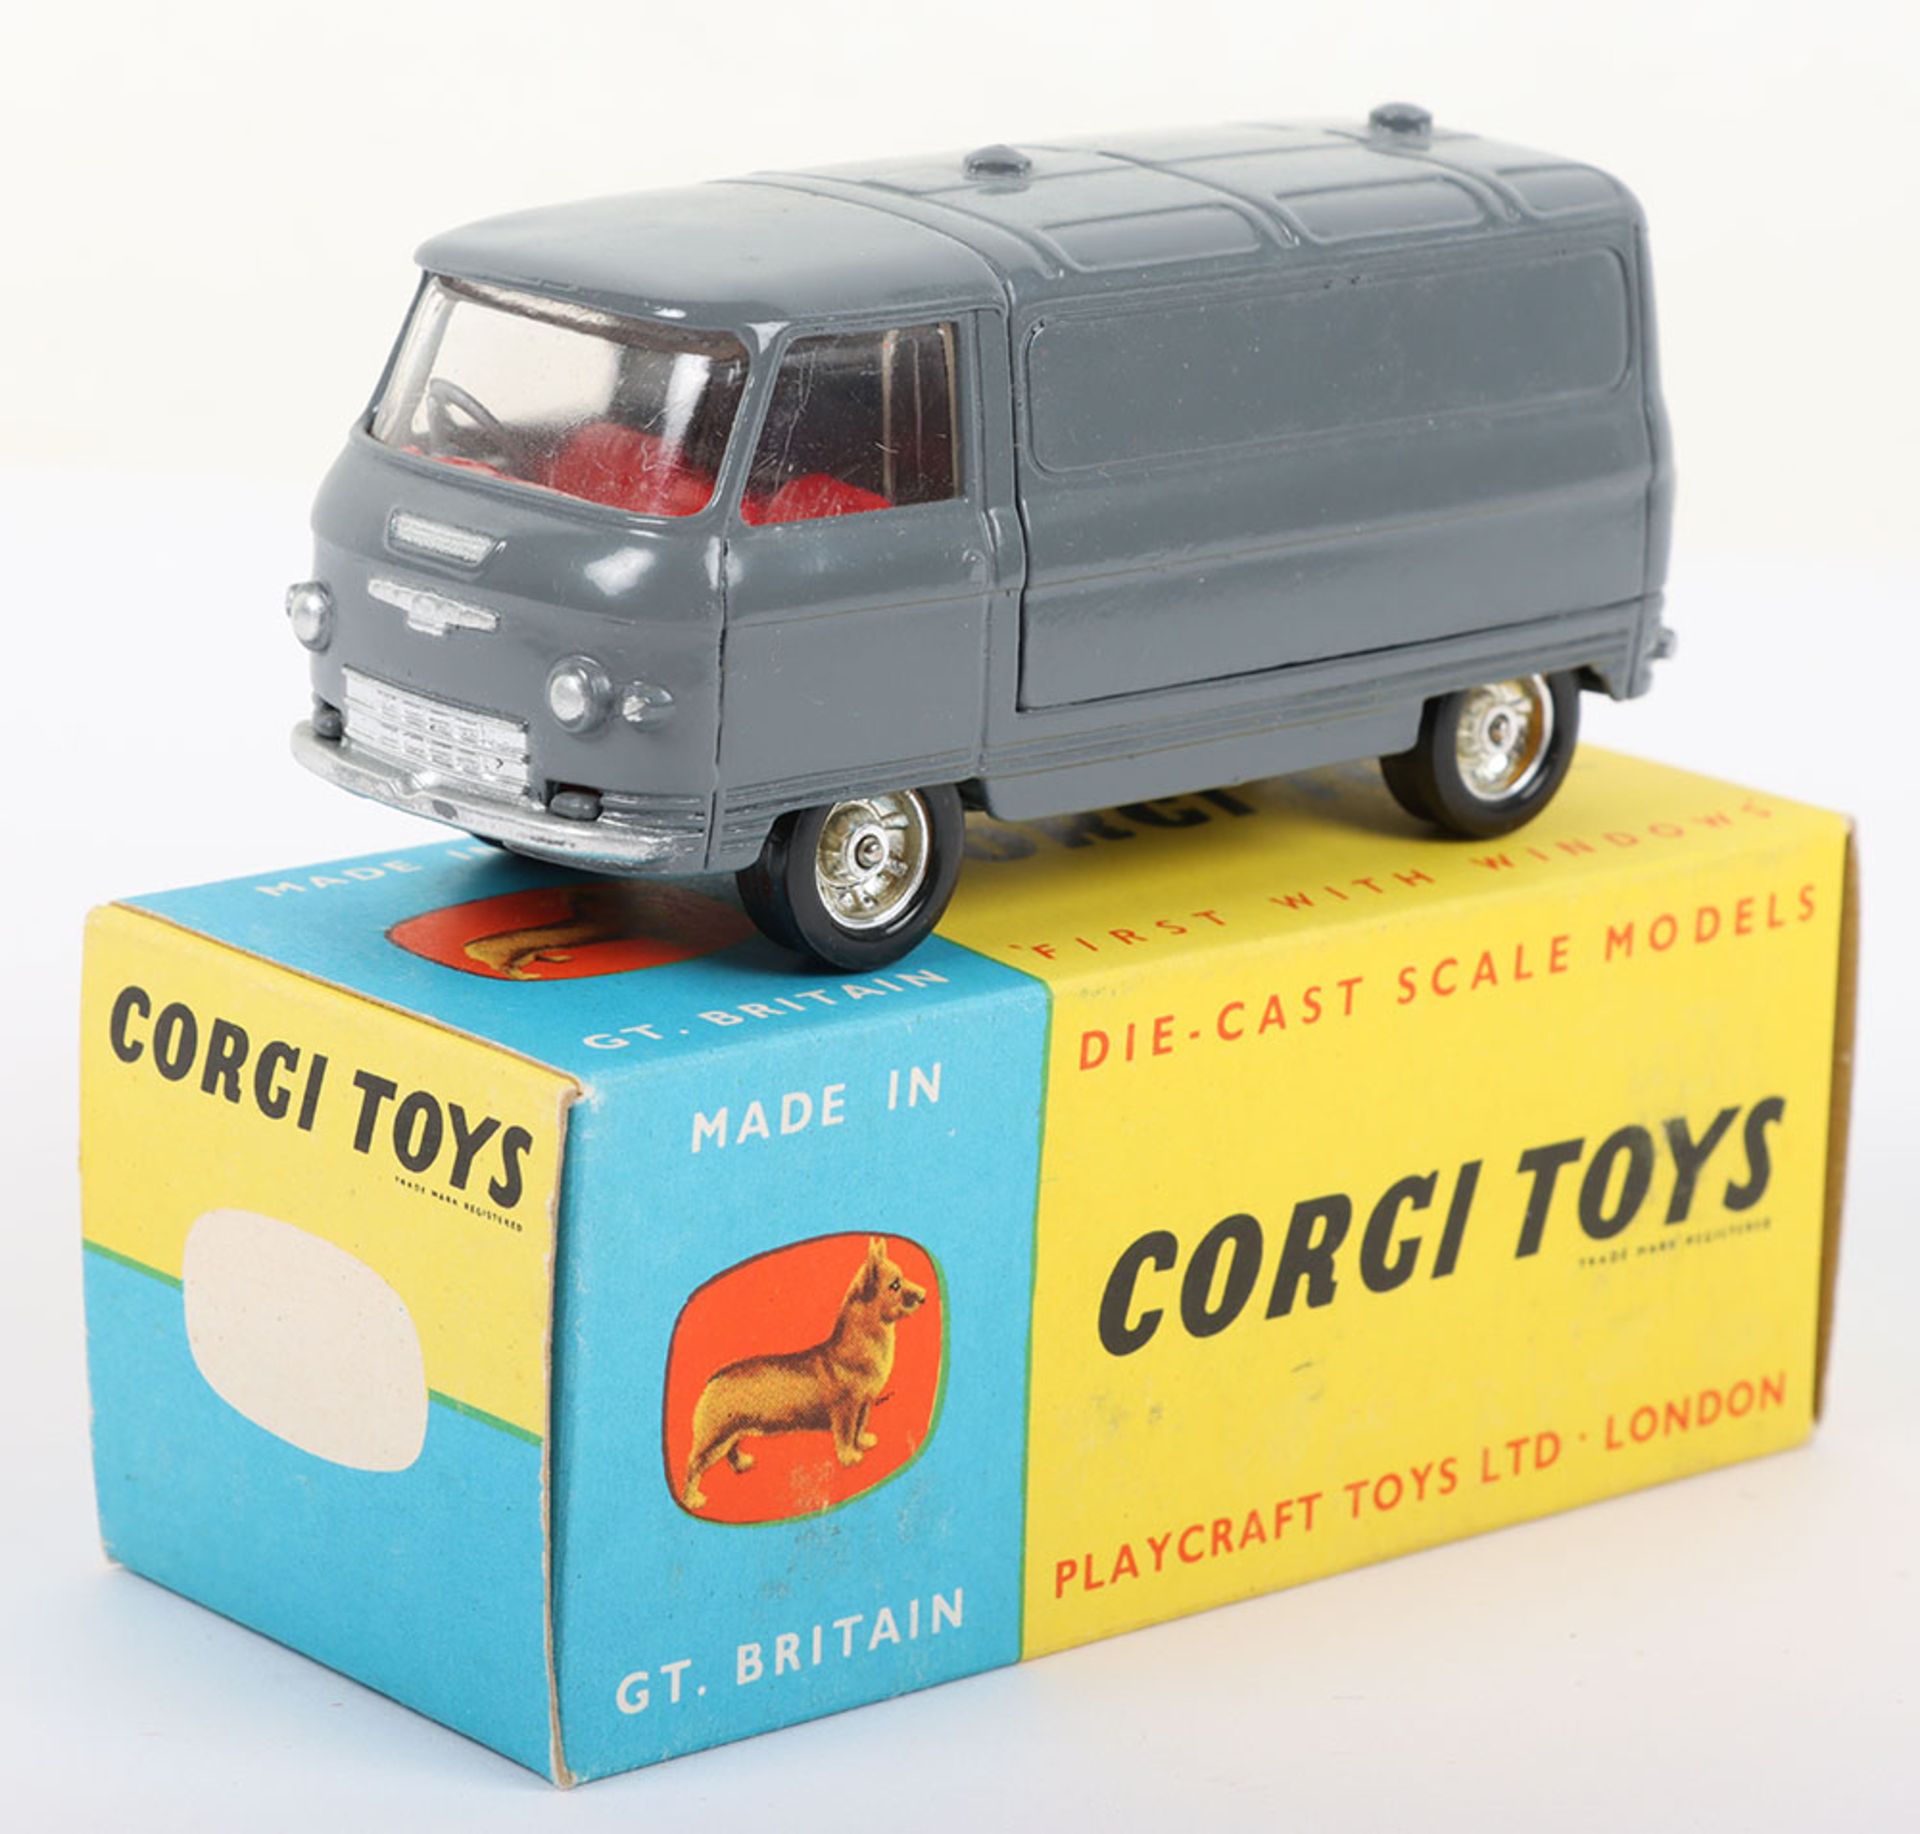 Corgi Toys 462 Commer Van "Combex"